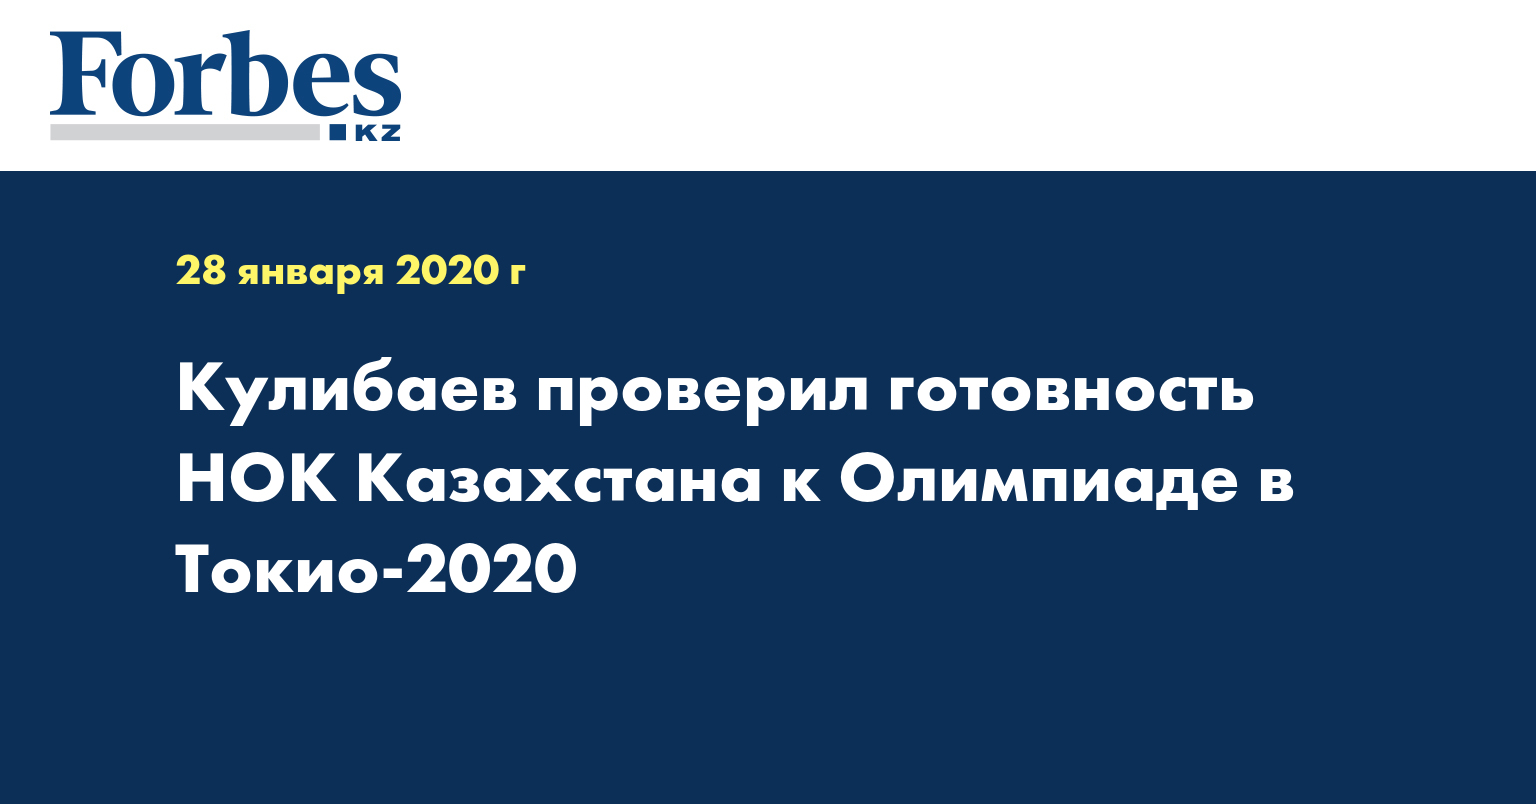 Кулибаев проверил готовность НОК Казахстана к Олимпиаде в Токио-2020